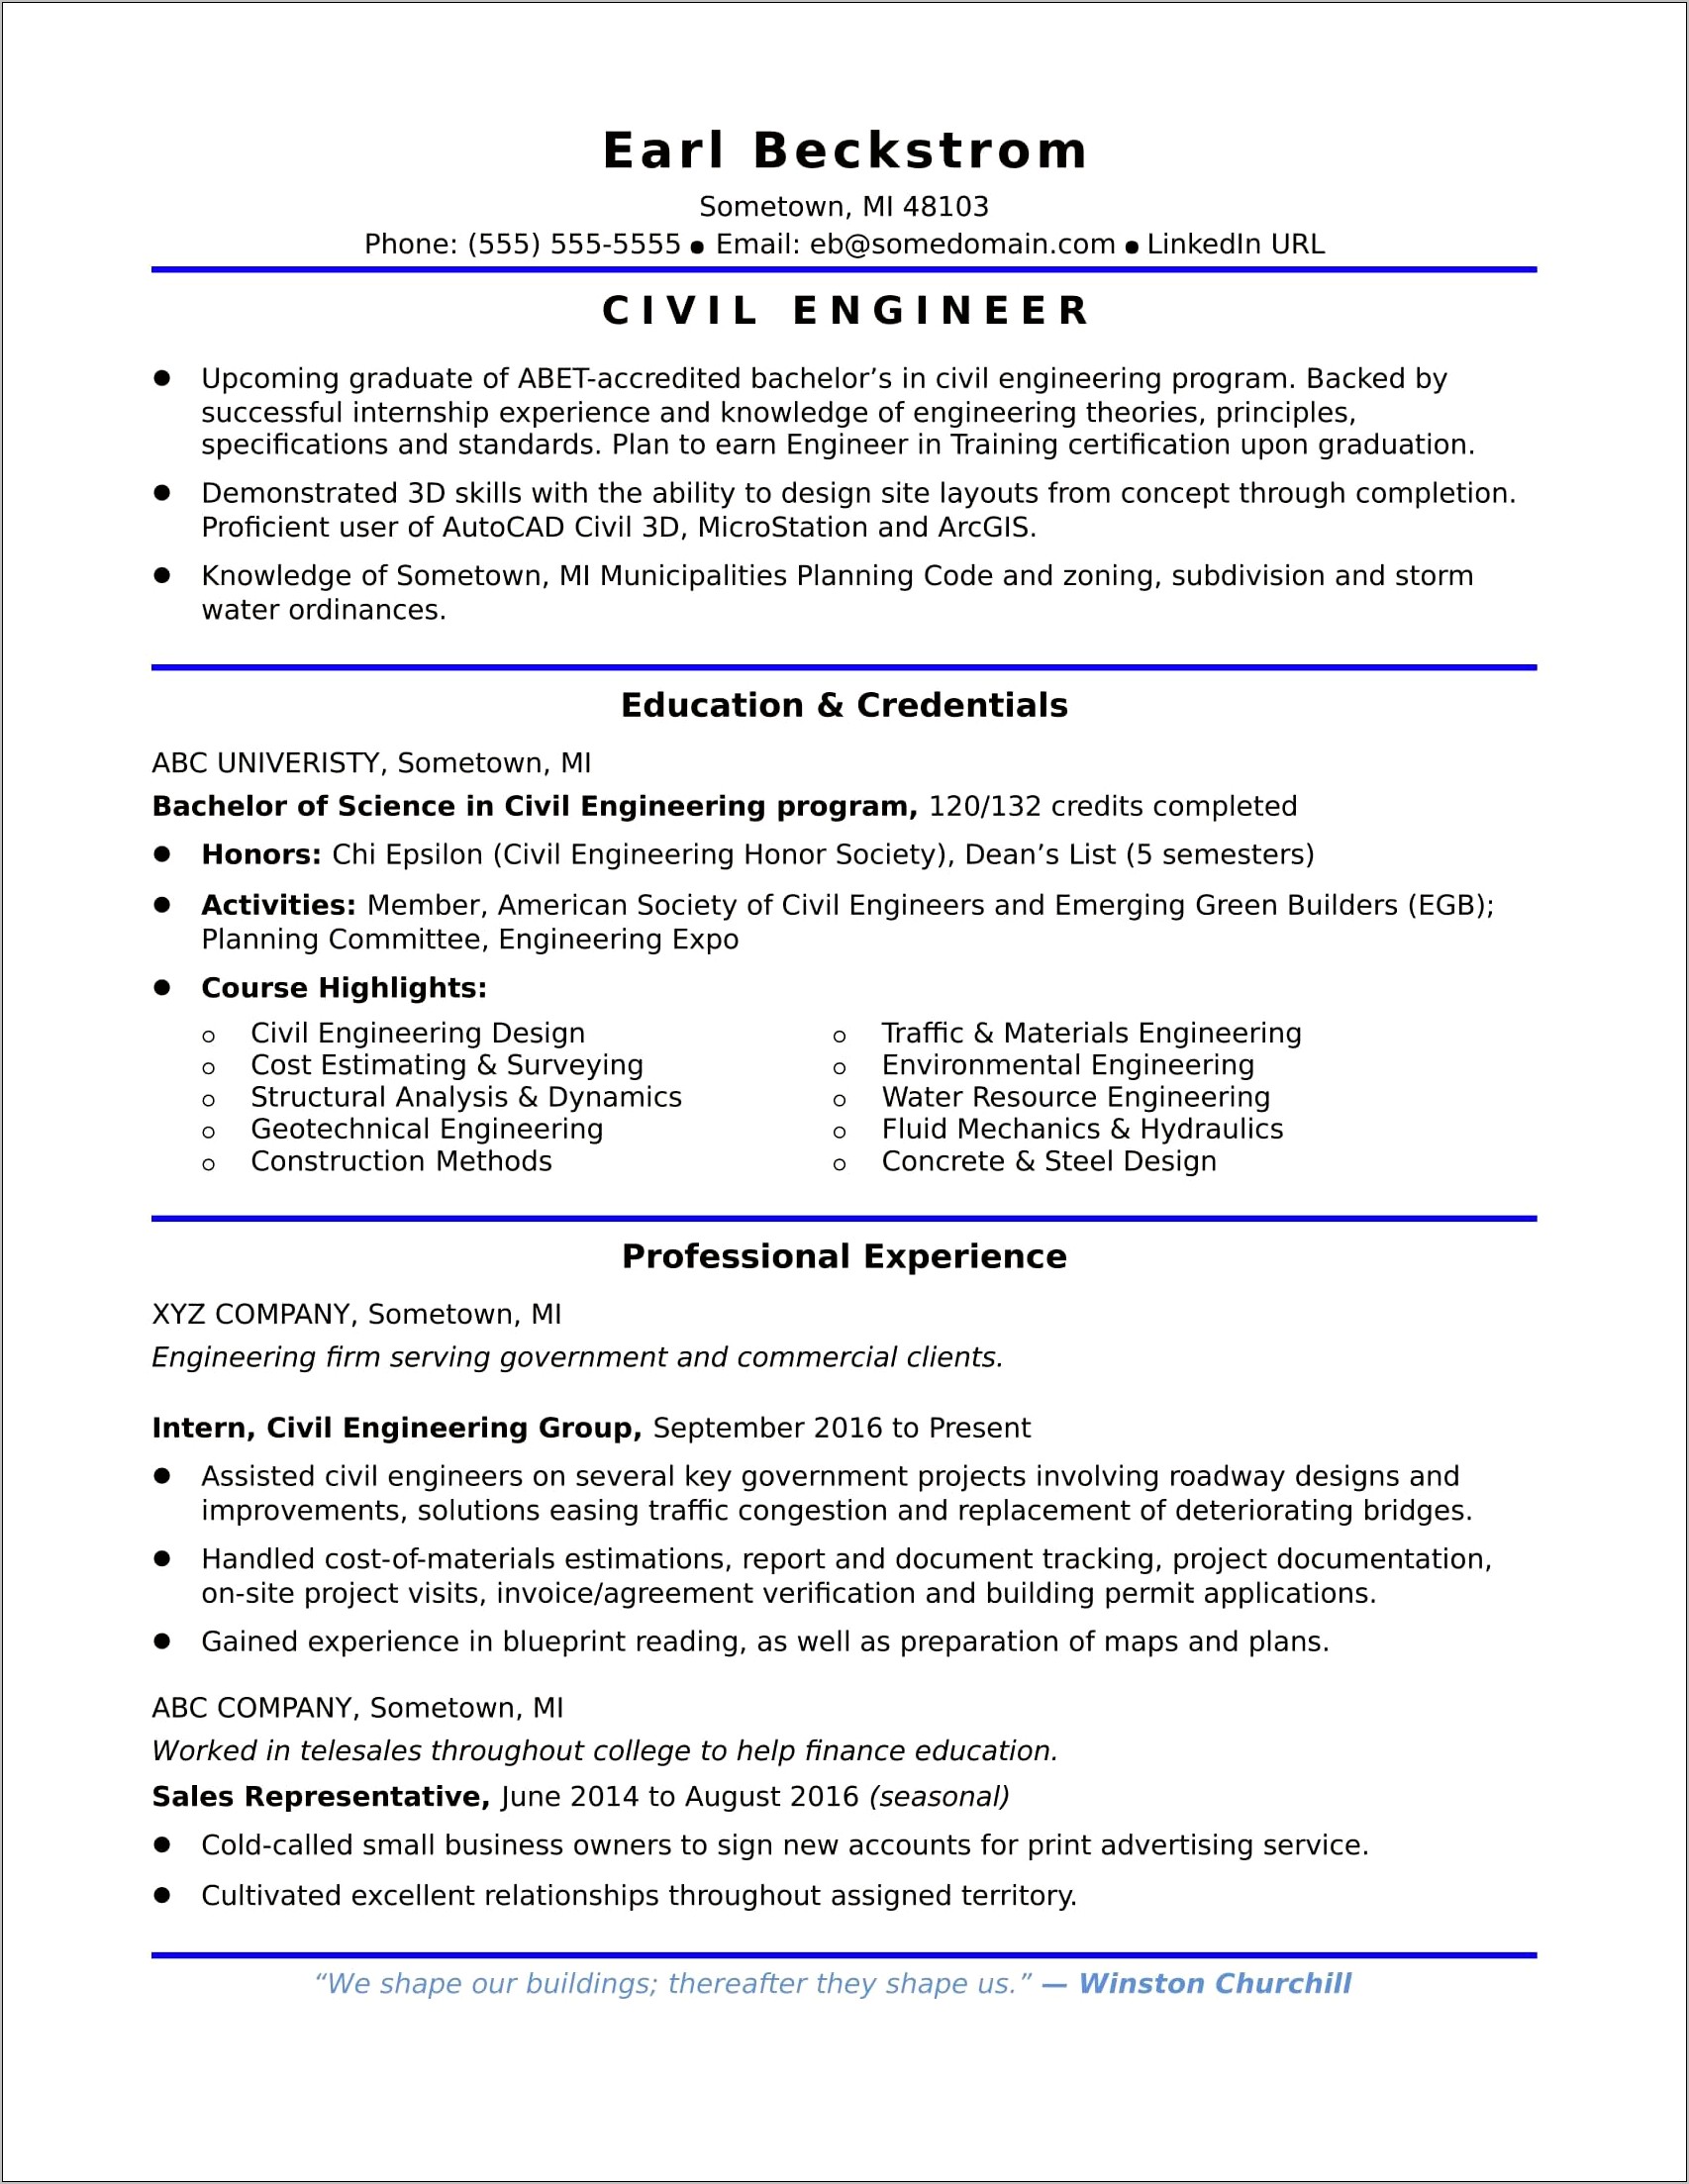 Civil Engineer Resume Word Format Free Download